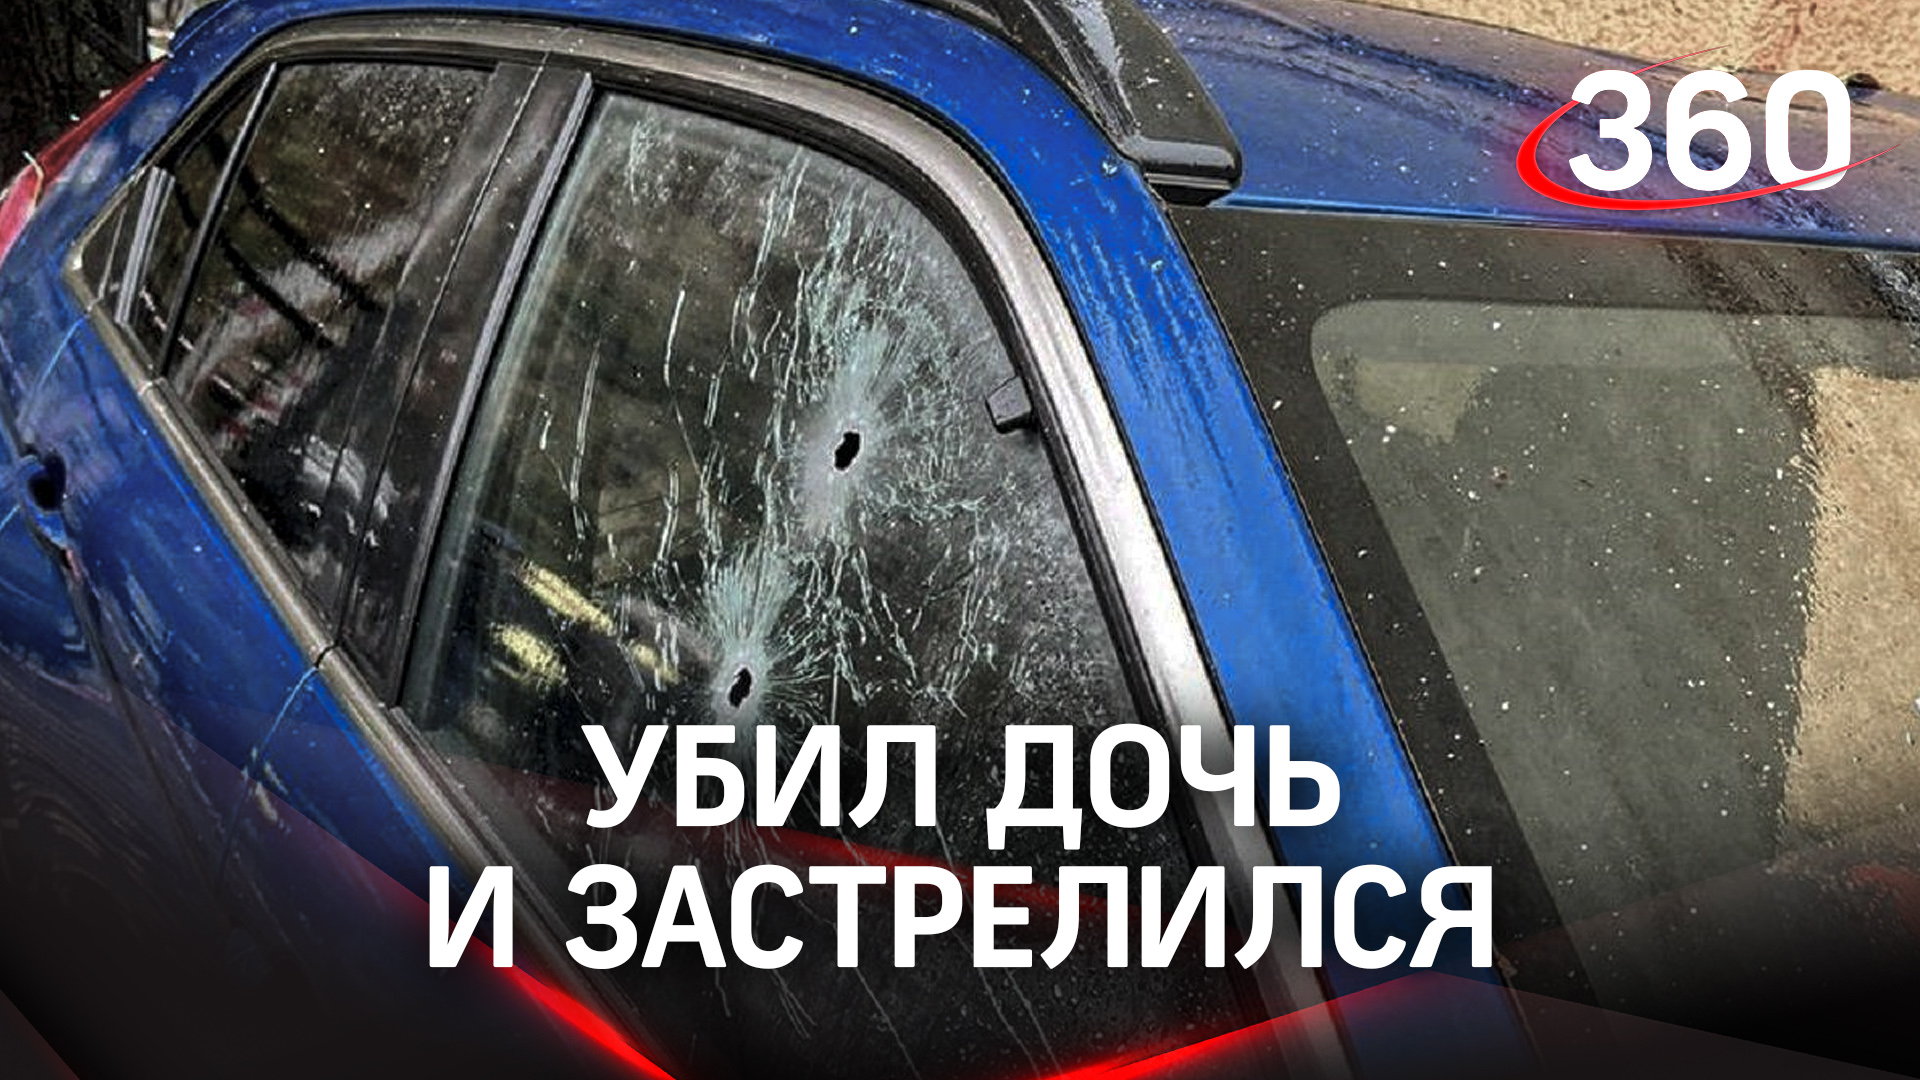 Расправился с дочерью и застрелился: убитых нашли около машины на западе Москвы